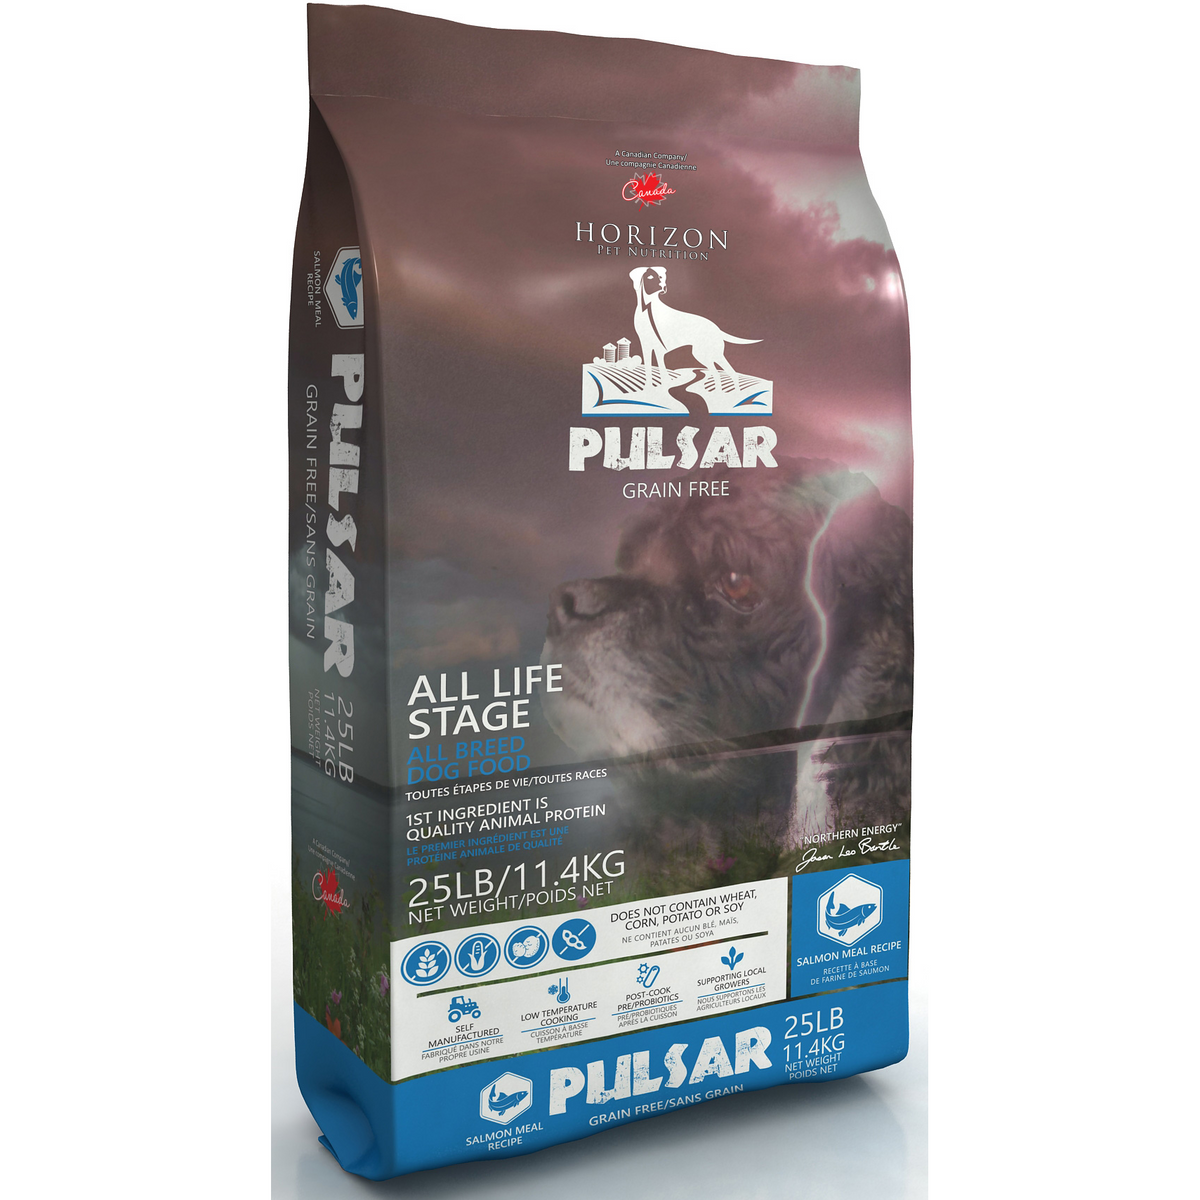 Horizon Pulsar Pulses and Fish Formula Grain Free Dog Food